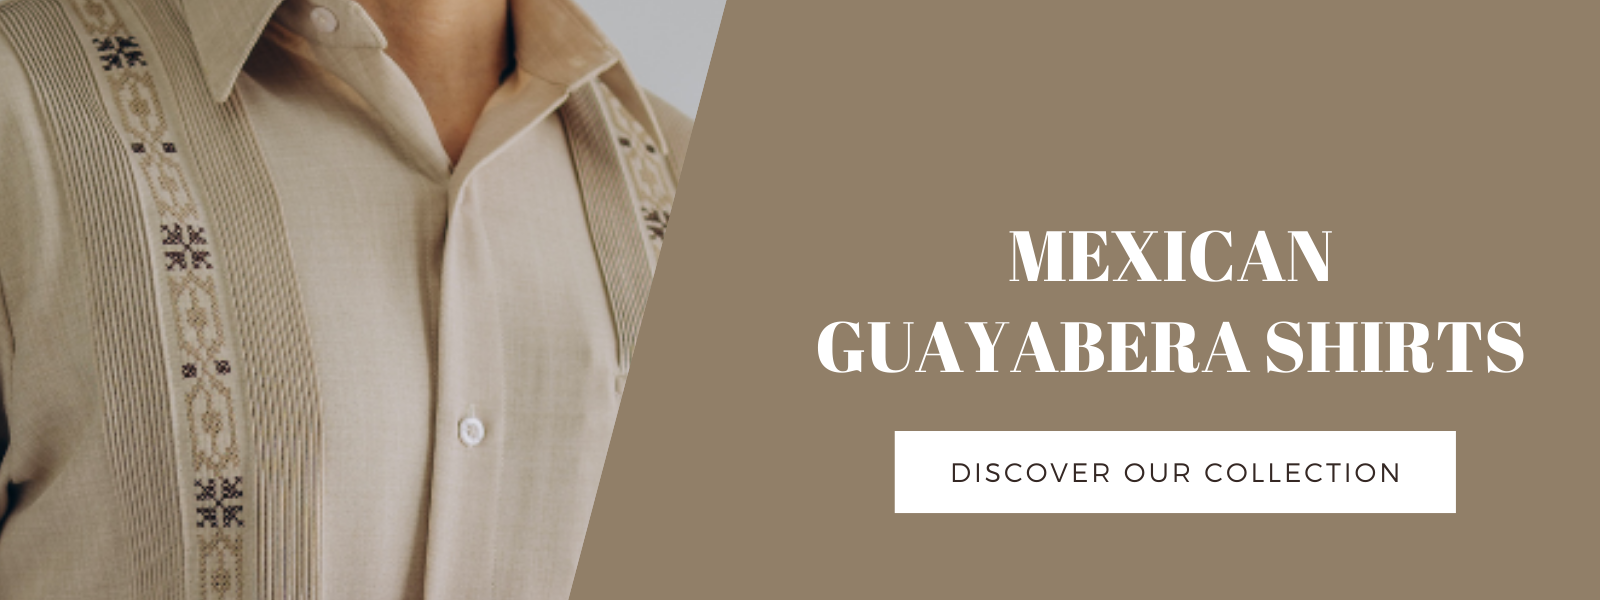 MEXICAN GUAYABERA SHIRTS